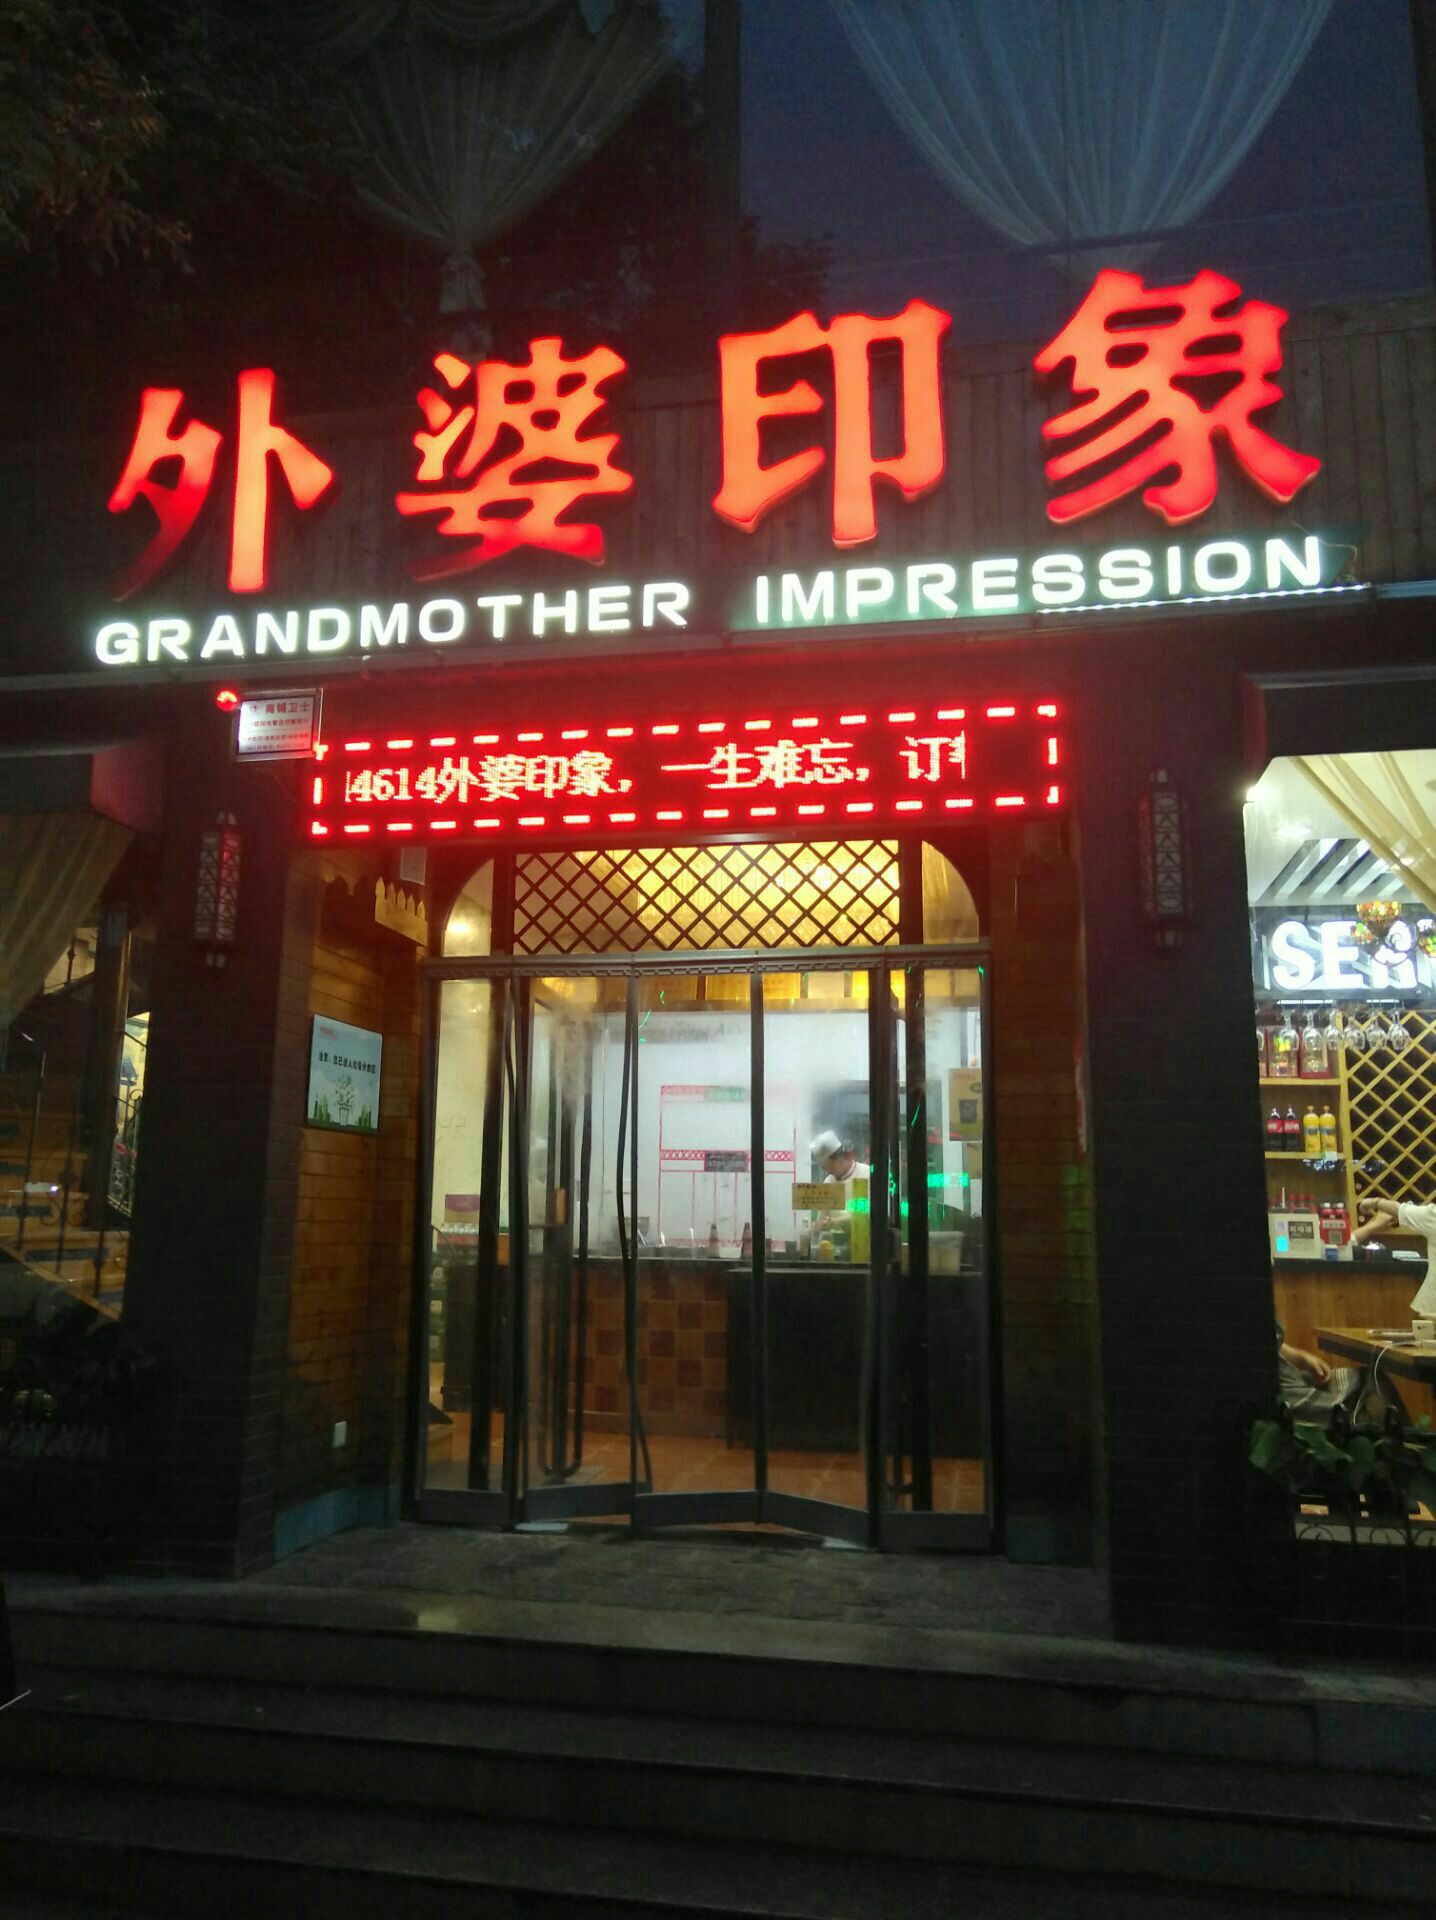 2023外婆印象(西五路店)美食餐厅,西安旅游第一顿晚餐就选中了...【去哪儿攻略】